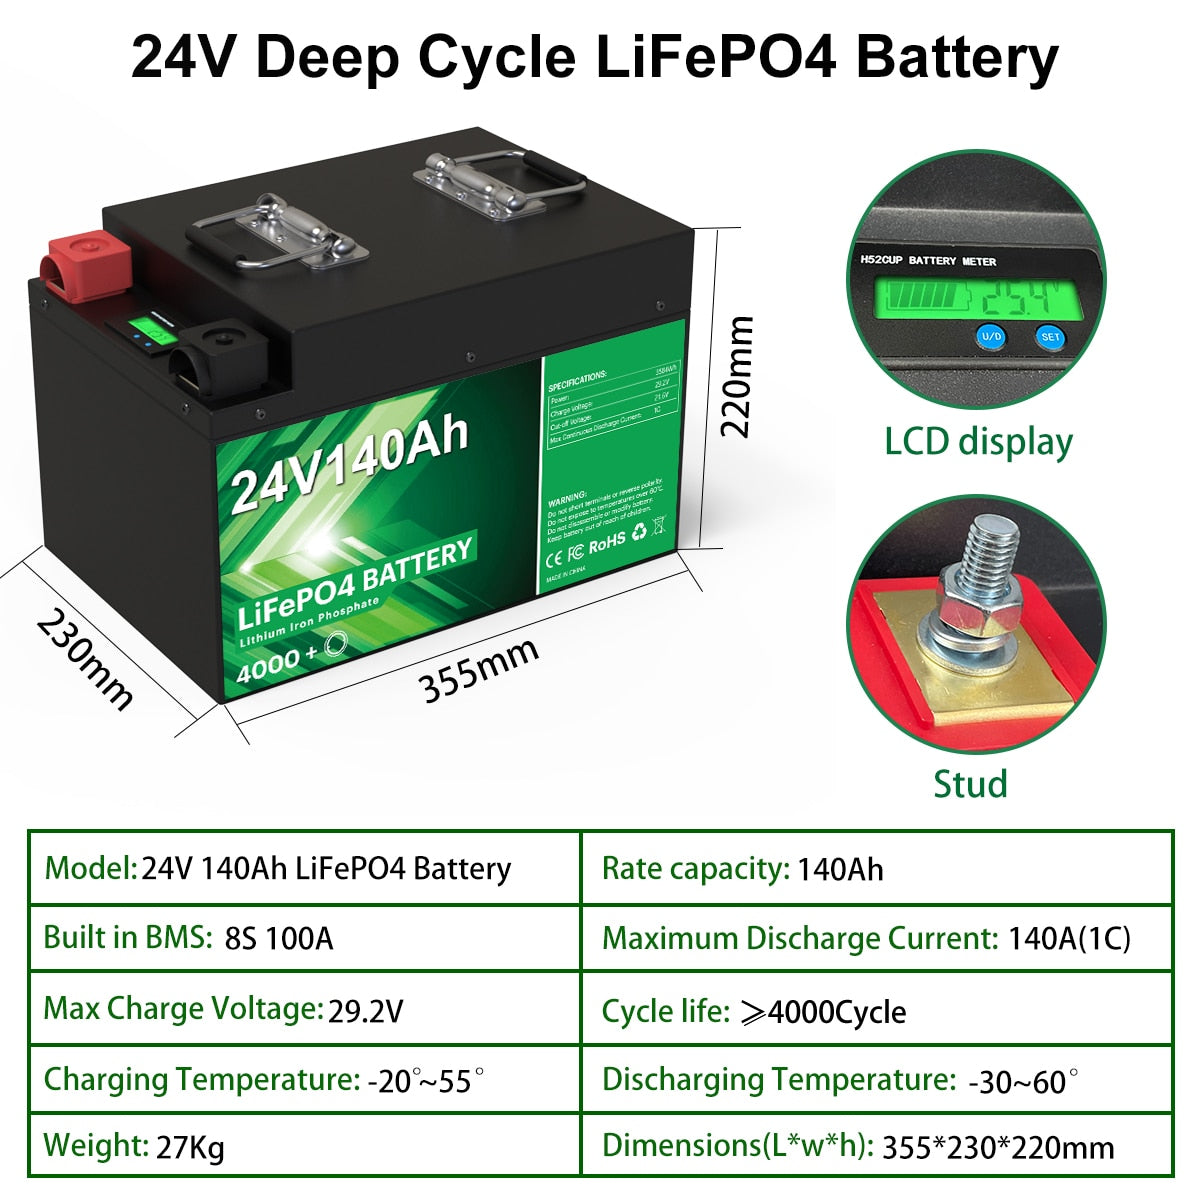 Bateria LiFePO4 24V 300Ah 200Ah 100Ah - 6000 ciclos 25,6V 7680Wh 8S 200A BMS RV Carrinho de golfe Bateria de lítio recarregável sem impostos